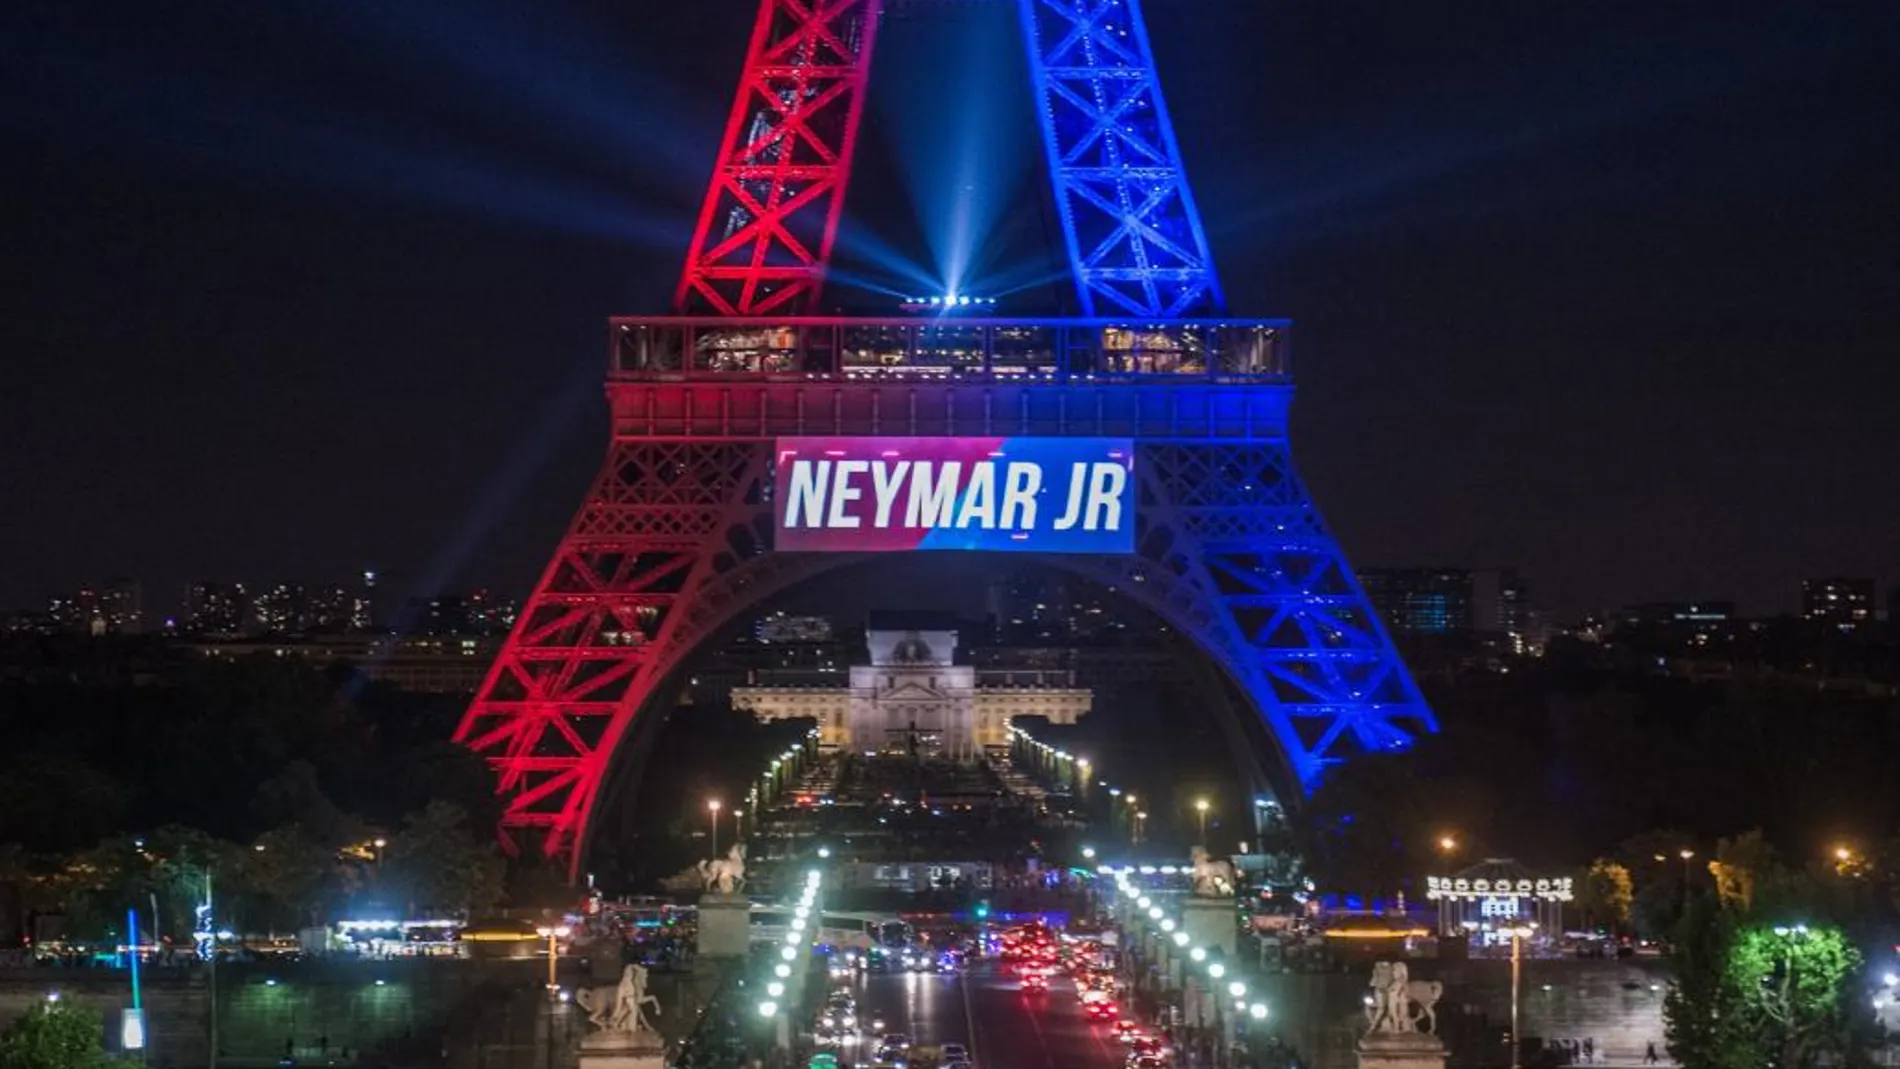 Anoche la Torre Eiffel de París estaba iluminada con los colores del club de fútbol Paris Saint-Germain debido a la presentación de Neymar